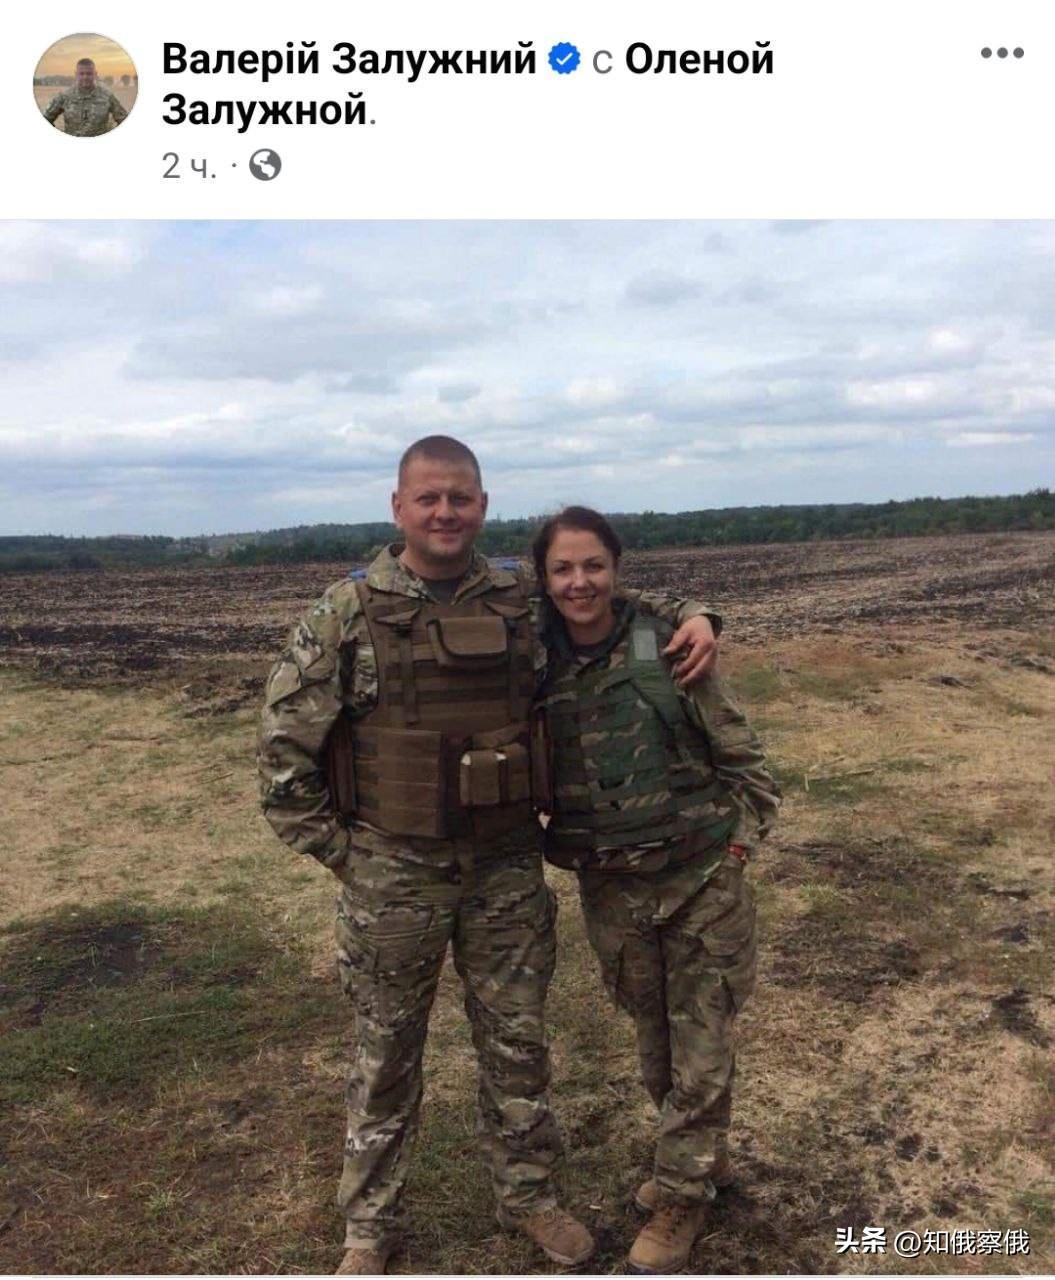 乌克兰武装部队前总司令扎卢日内发布了他被解雇后的第一张照片。照片中的扎卢日内和他的妻子埃琳娜站在一起，两人都穿着军装。

显然，他们在俄乌前线的某个地方。扎卢日